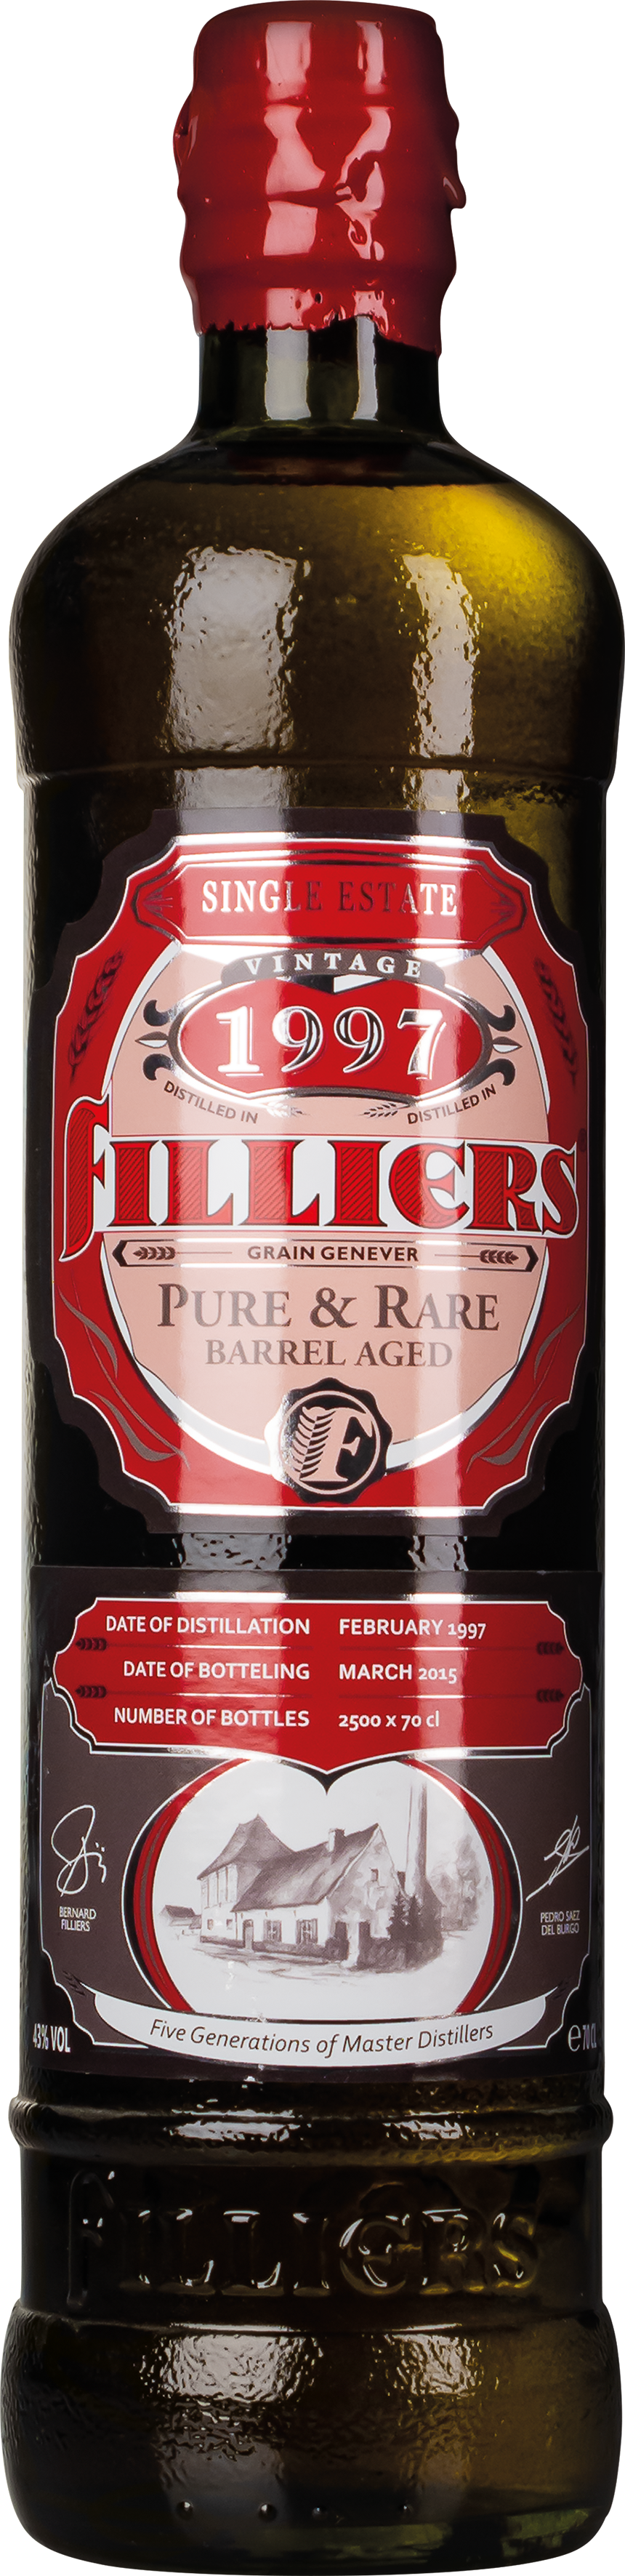 Flasche Filliers Genever Pure & Rare 1997